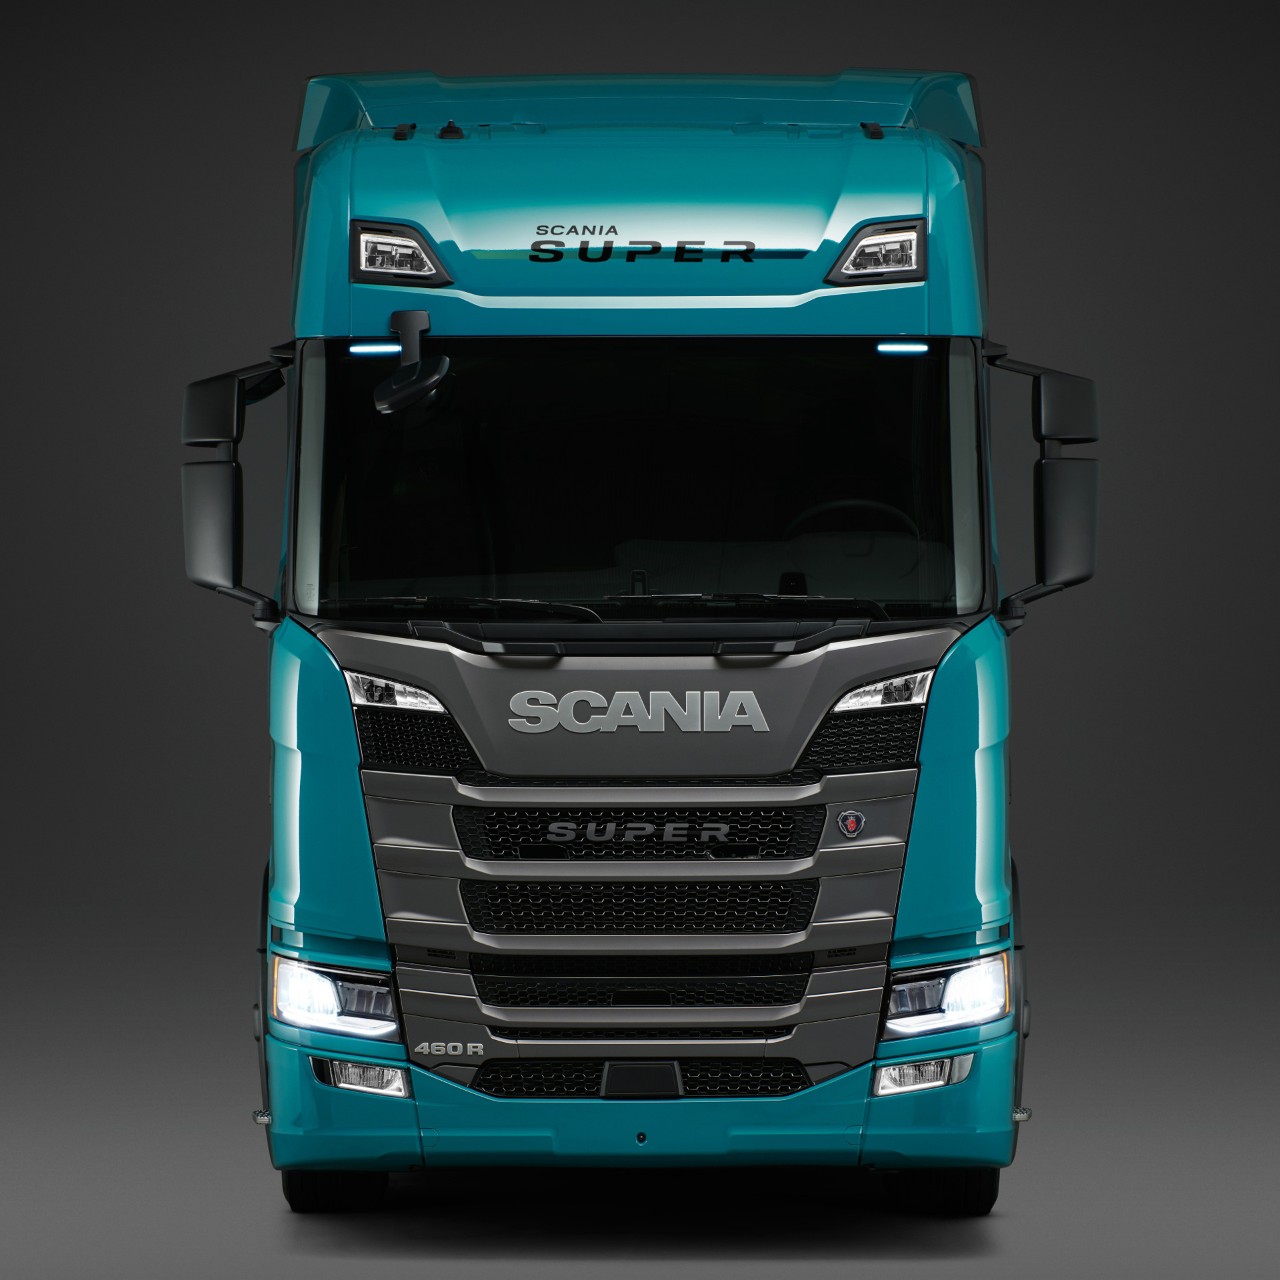 Pressiteade: Scania toob turule homsetele nõuetele vastavad tehnilised lahendused